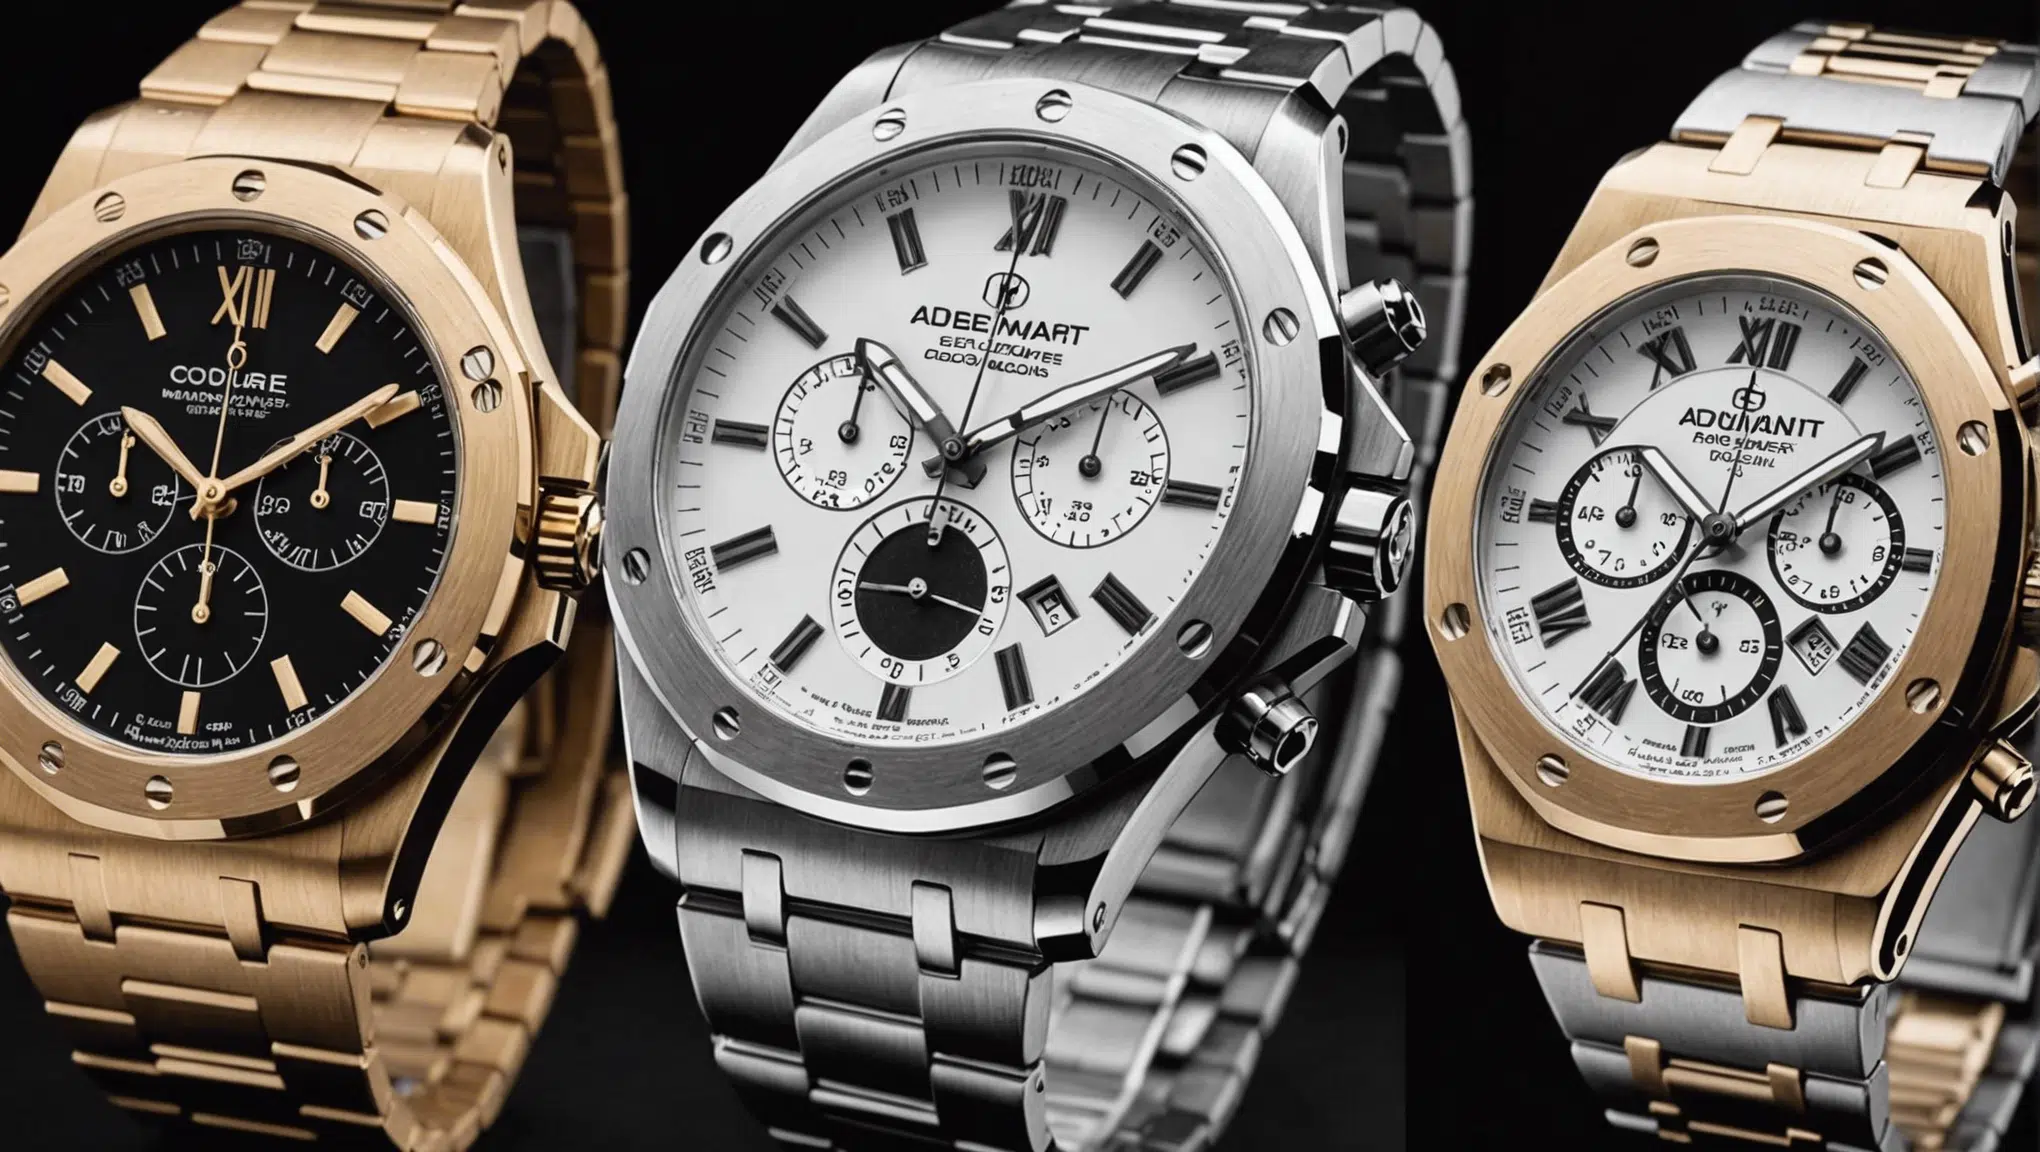 découvrez les 8 modèles incontournables de montres blanches pour homme : audemars piguet, swatch, rolex, omega, rado et plus encore. trouvez la montre qui correspondra parfaitement à votre style !